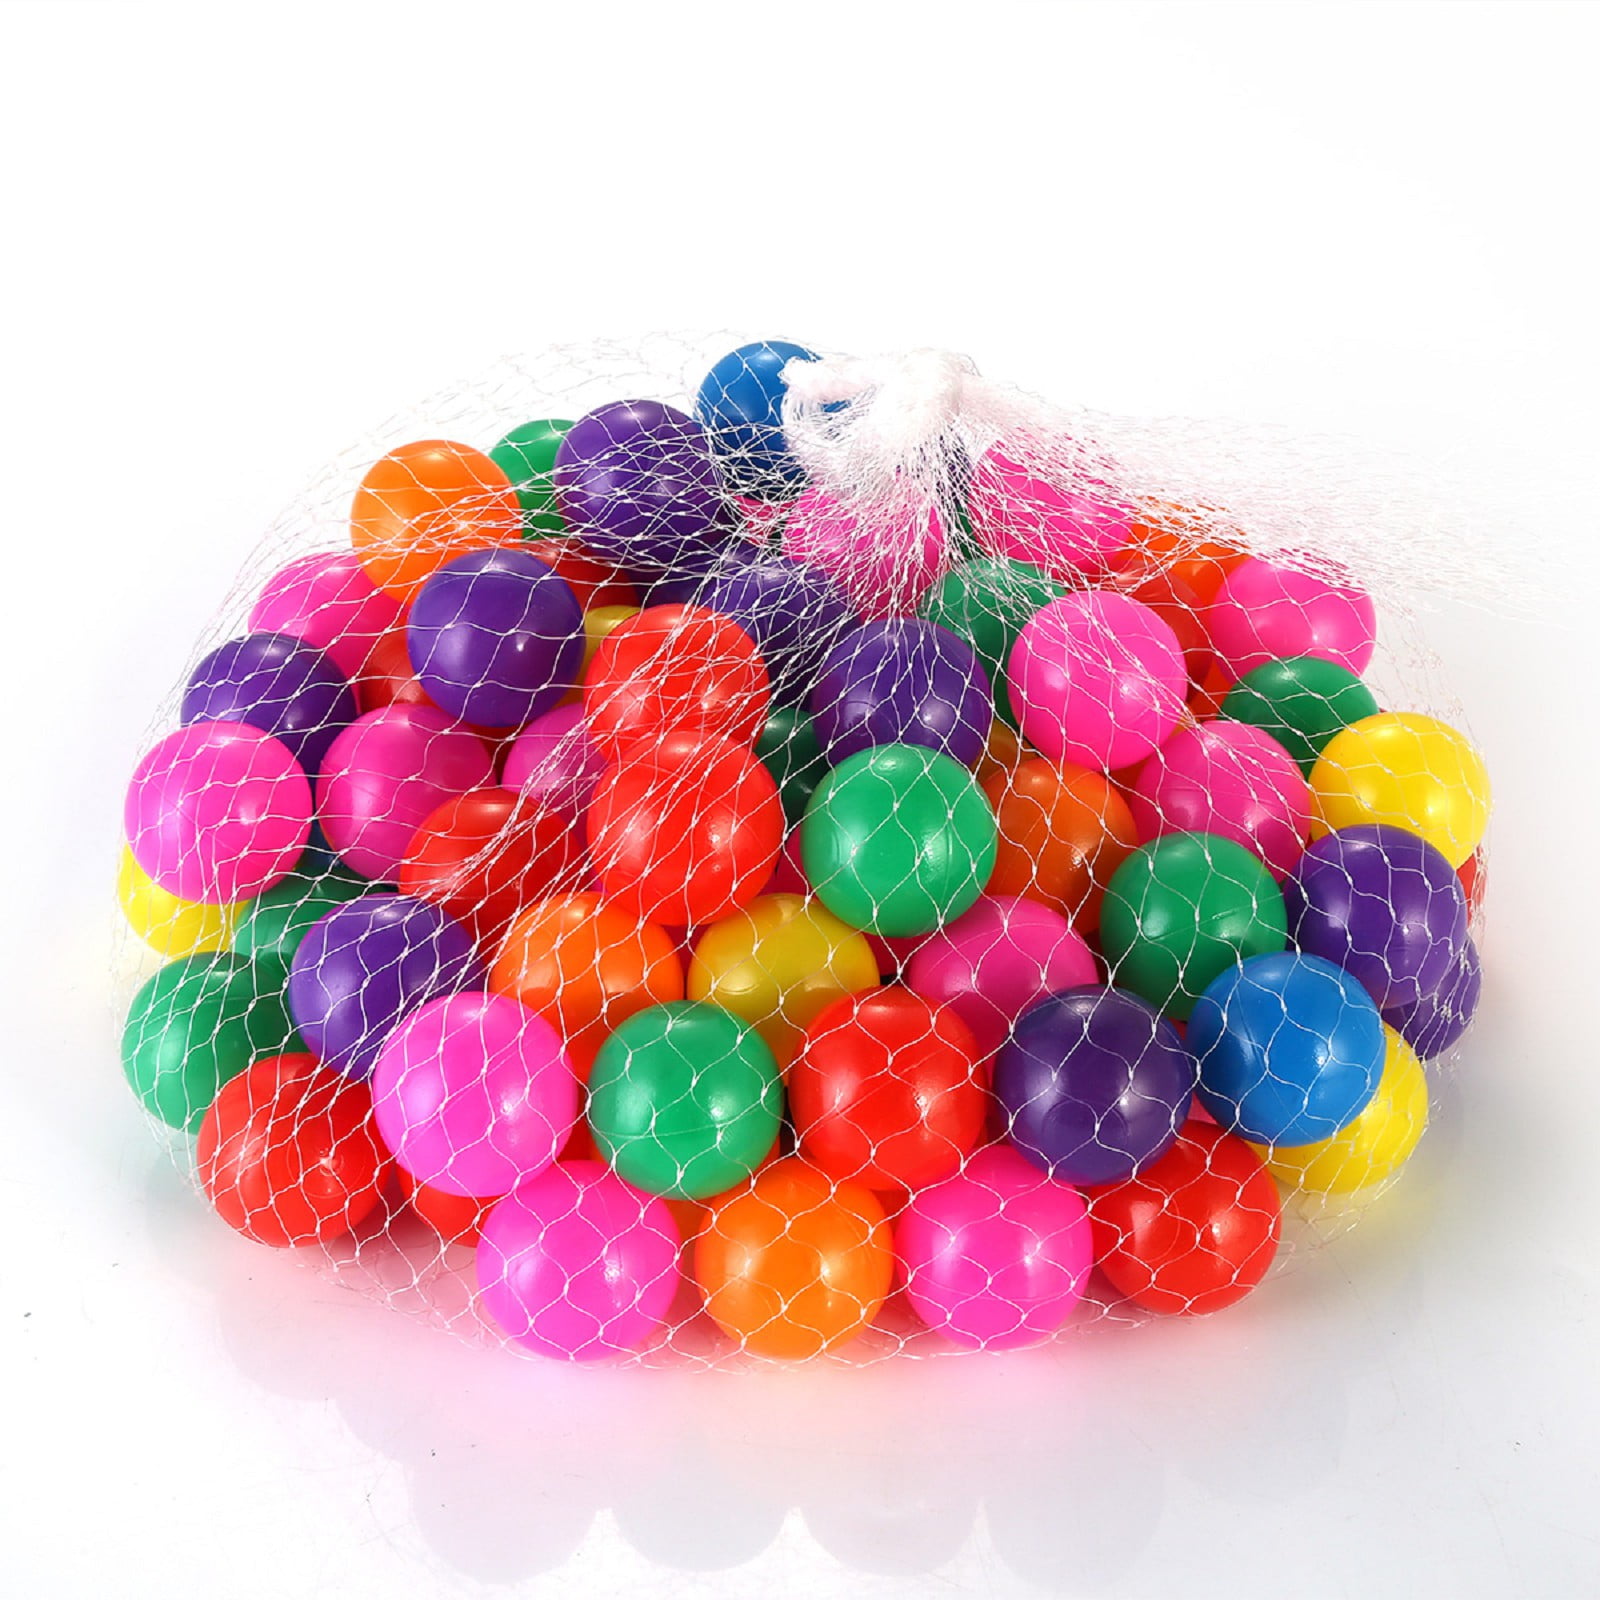 OsoFun 250Pcs Multicolor Soft Plastic Play Balls Random Color 